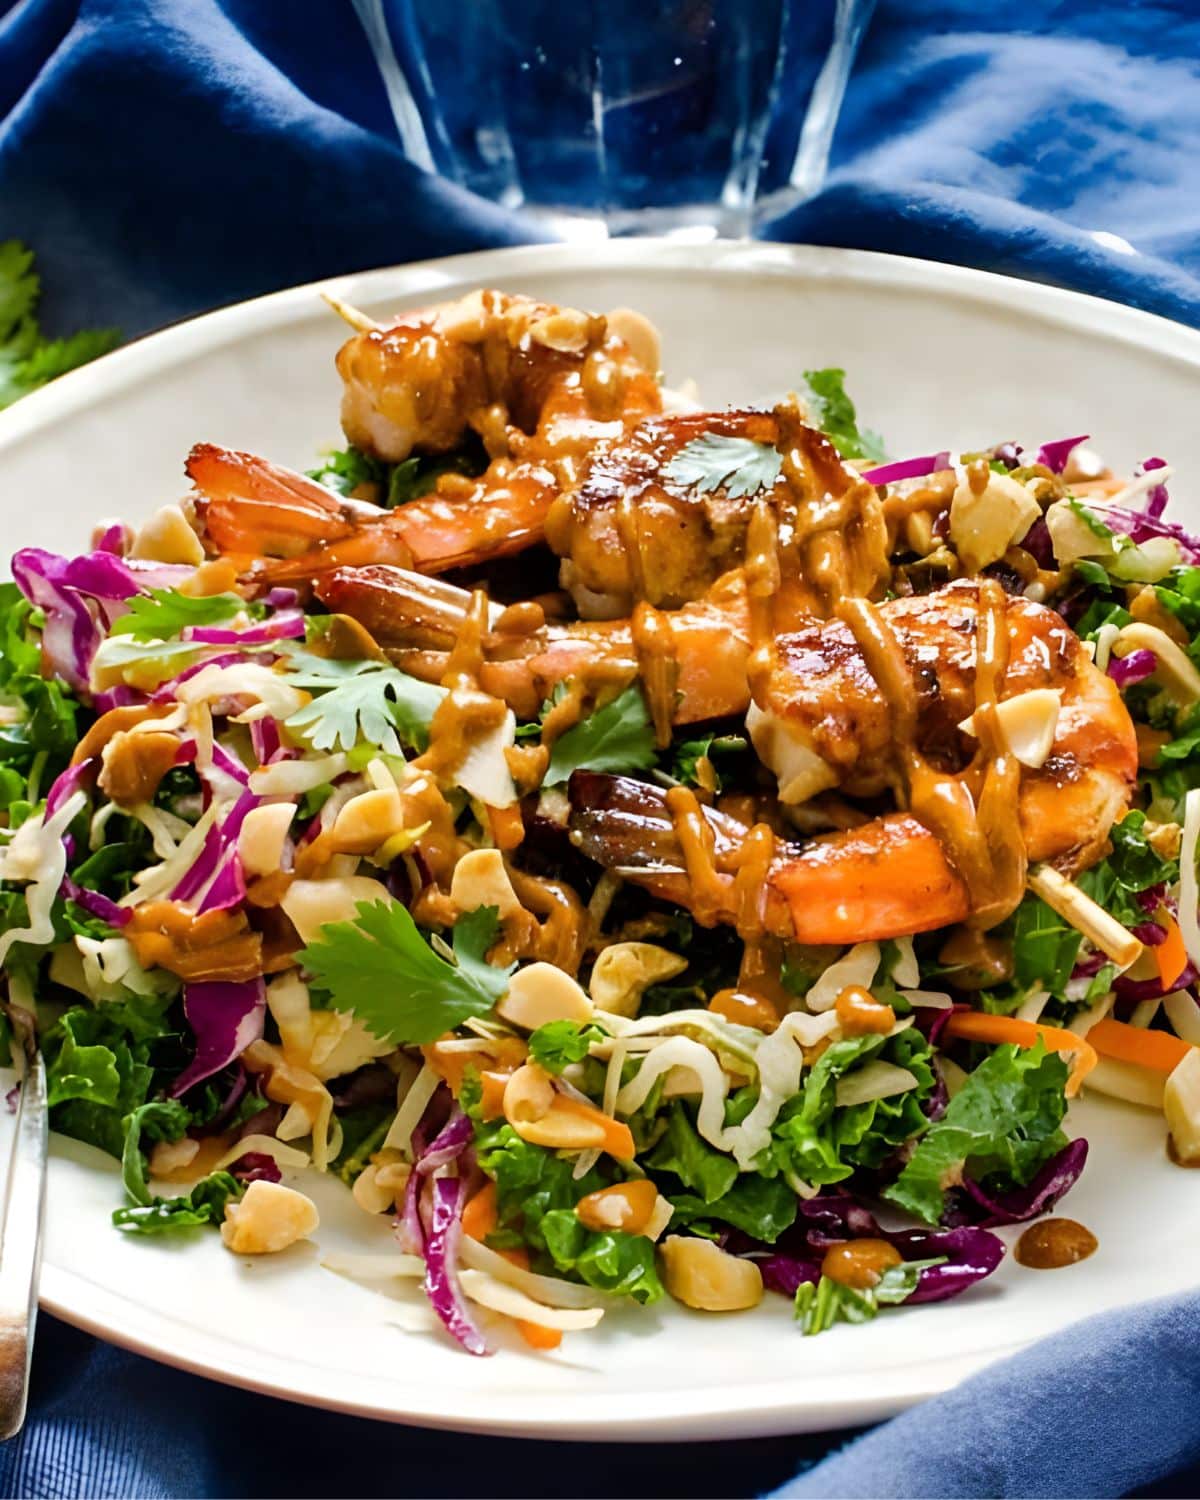 An Asian BBQ salad with shrimp and sauce.